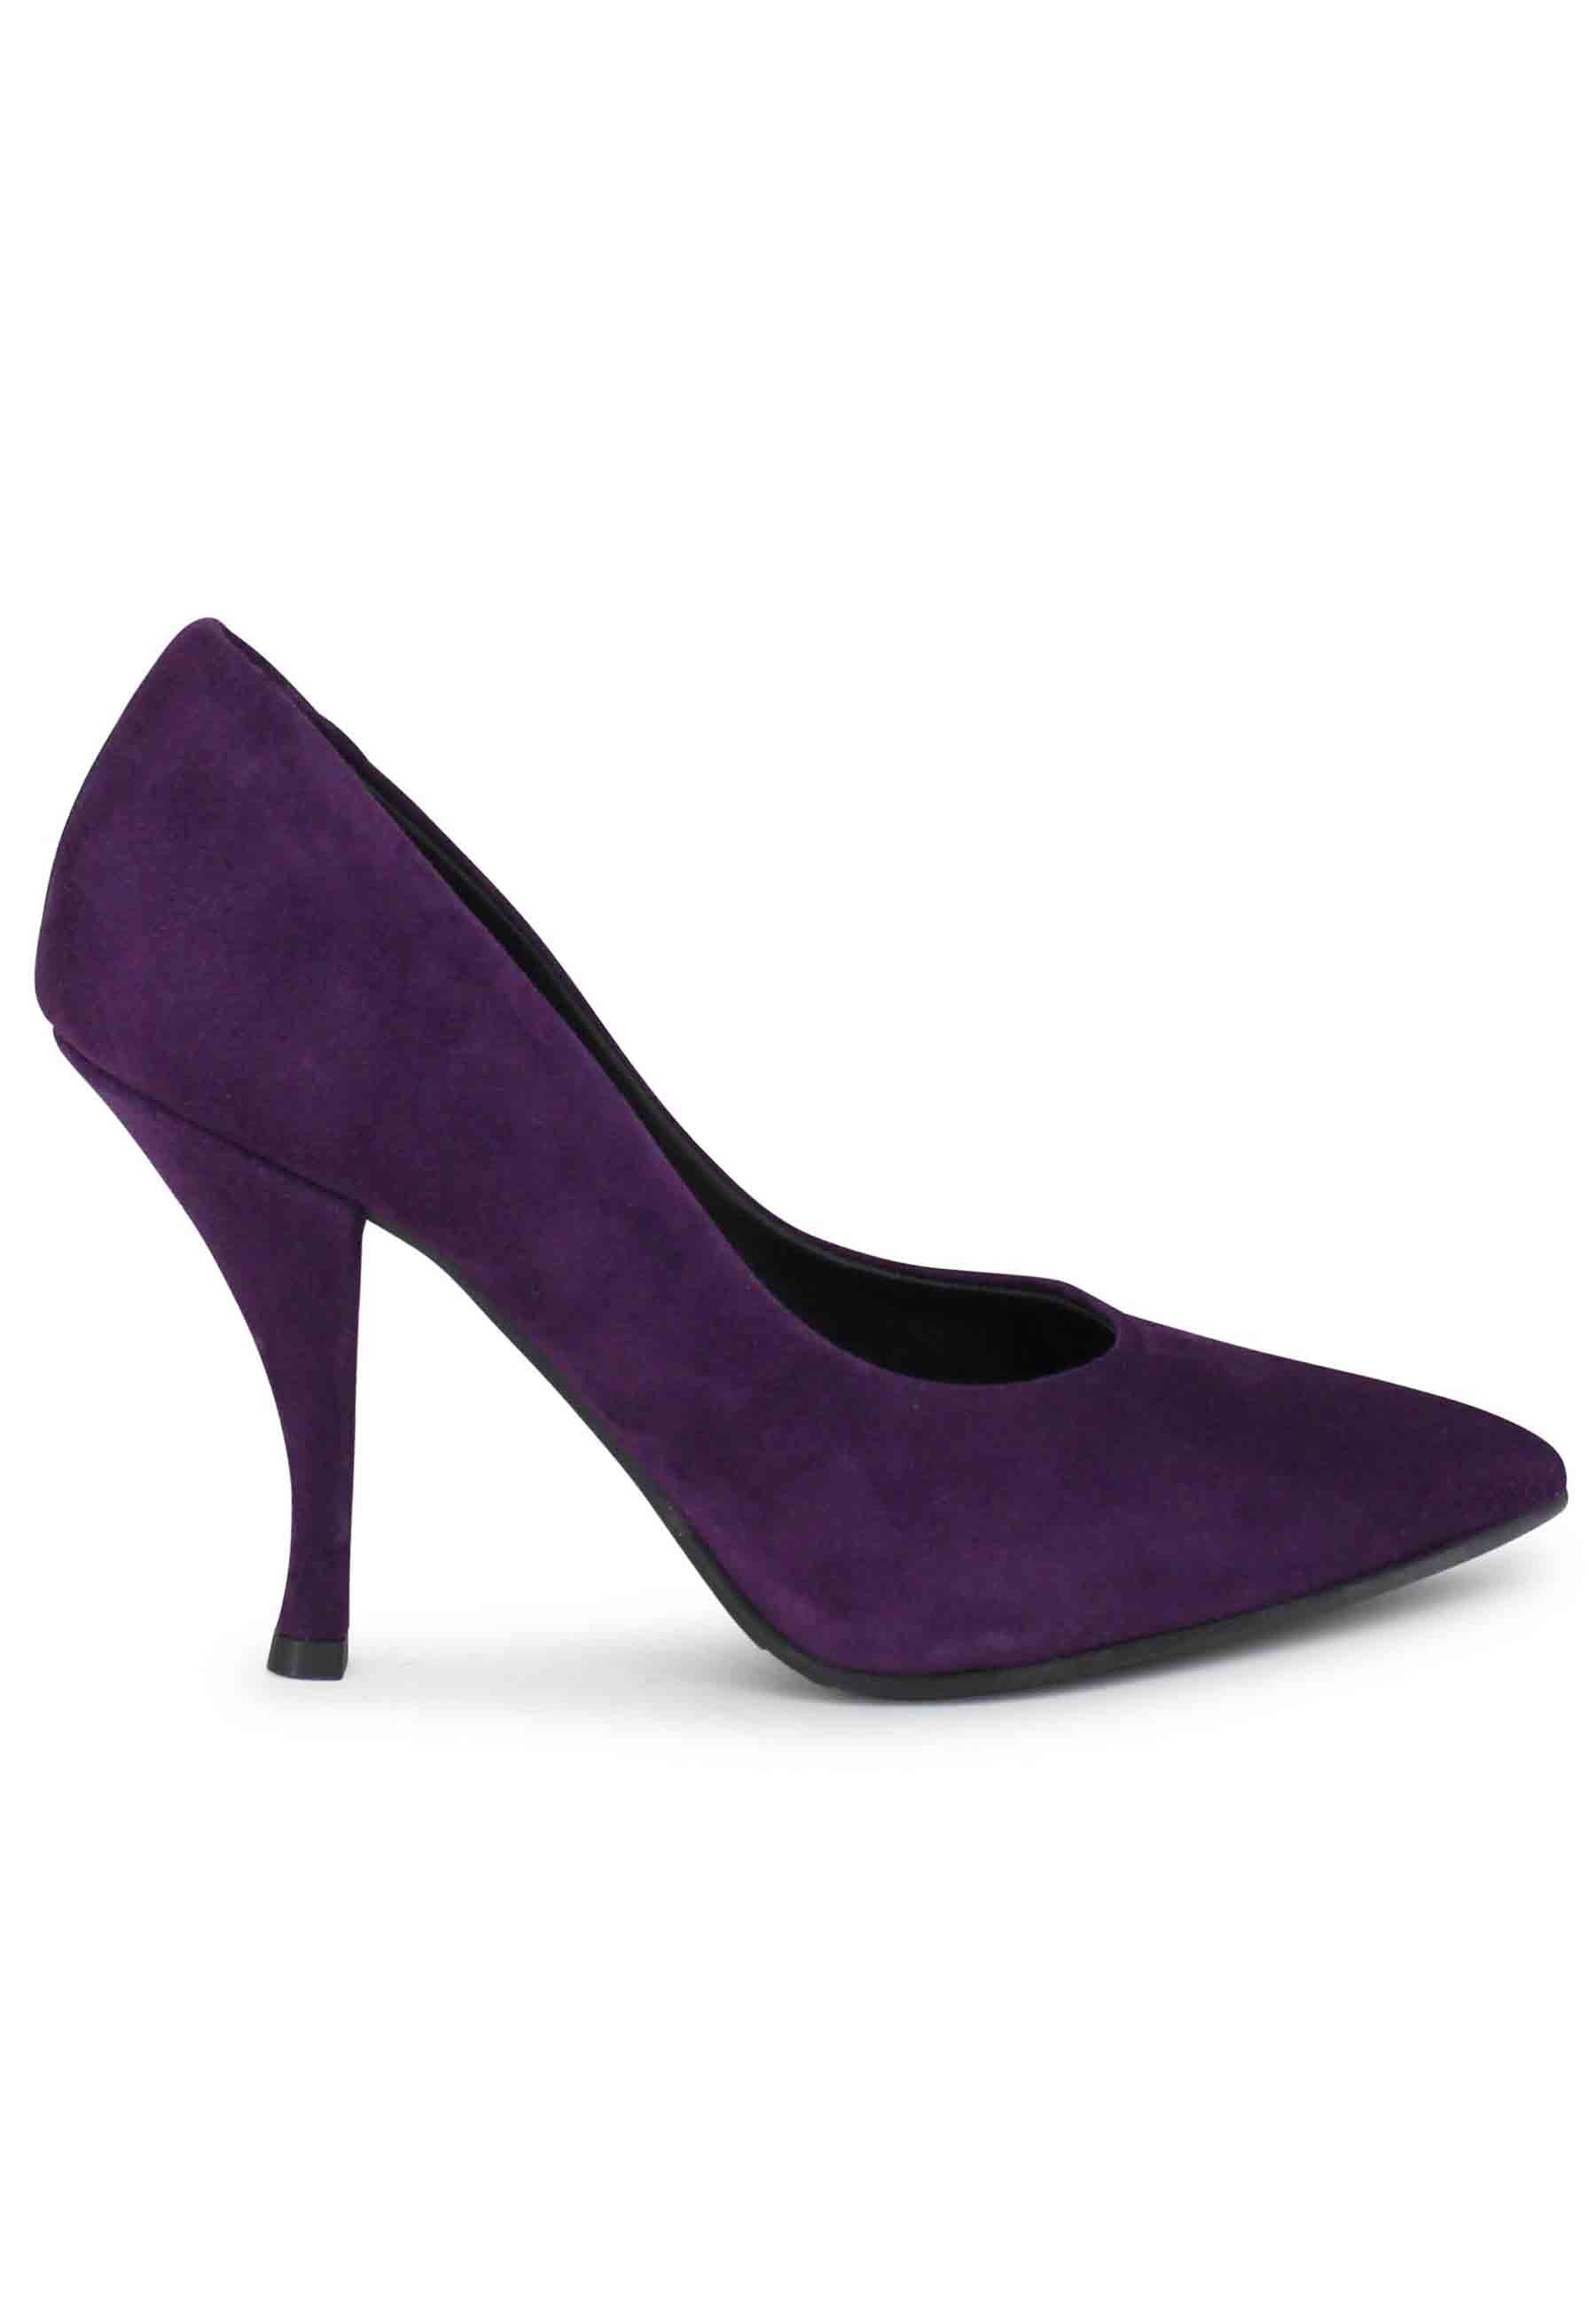 Women's high heel purple suede pumps